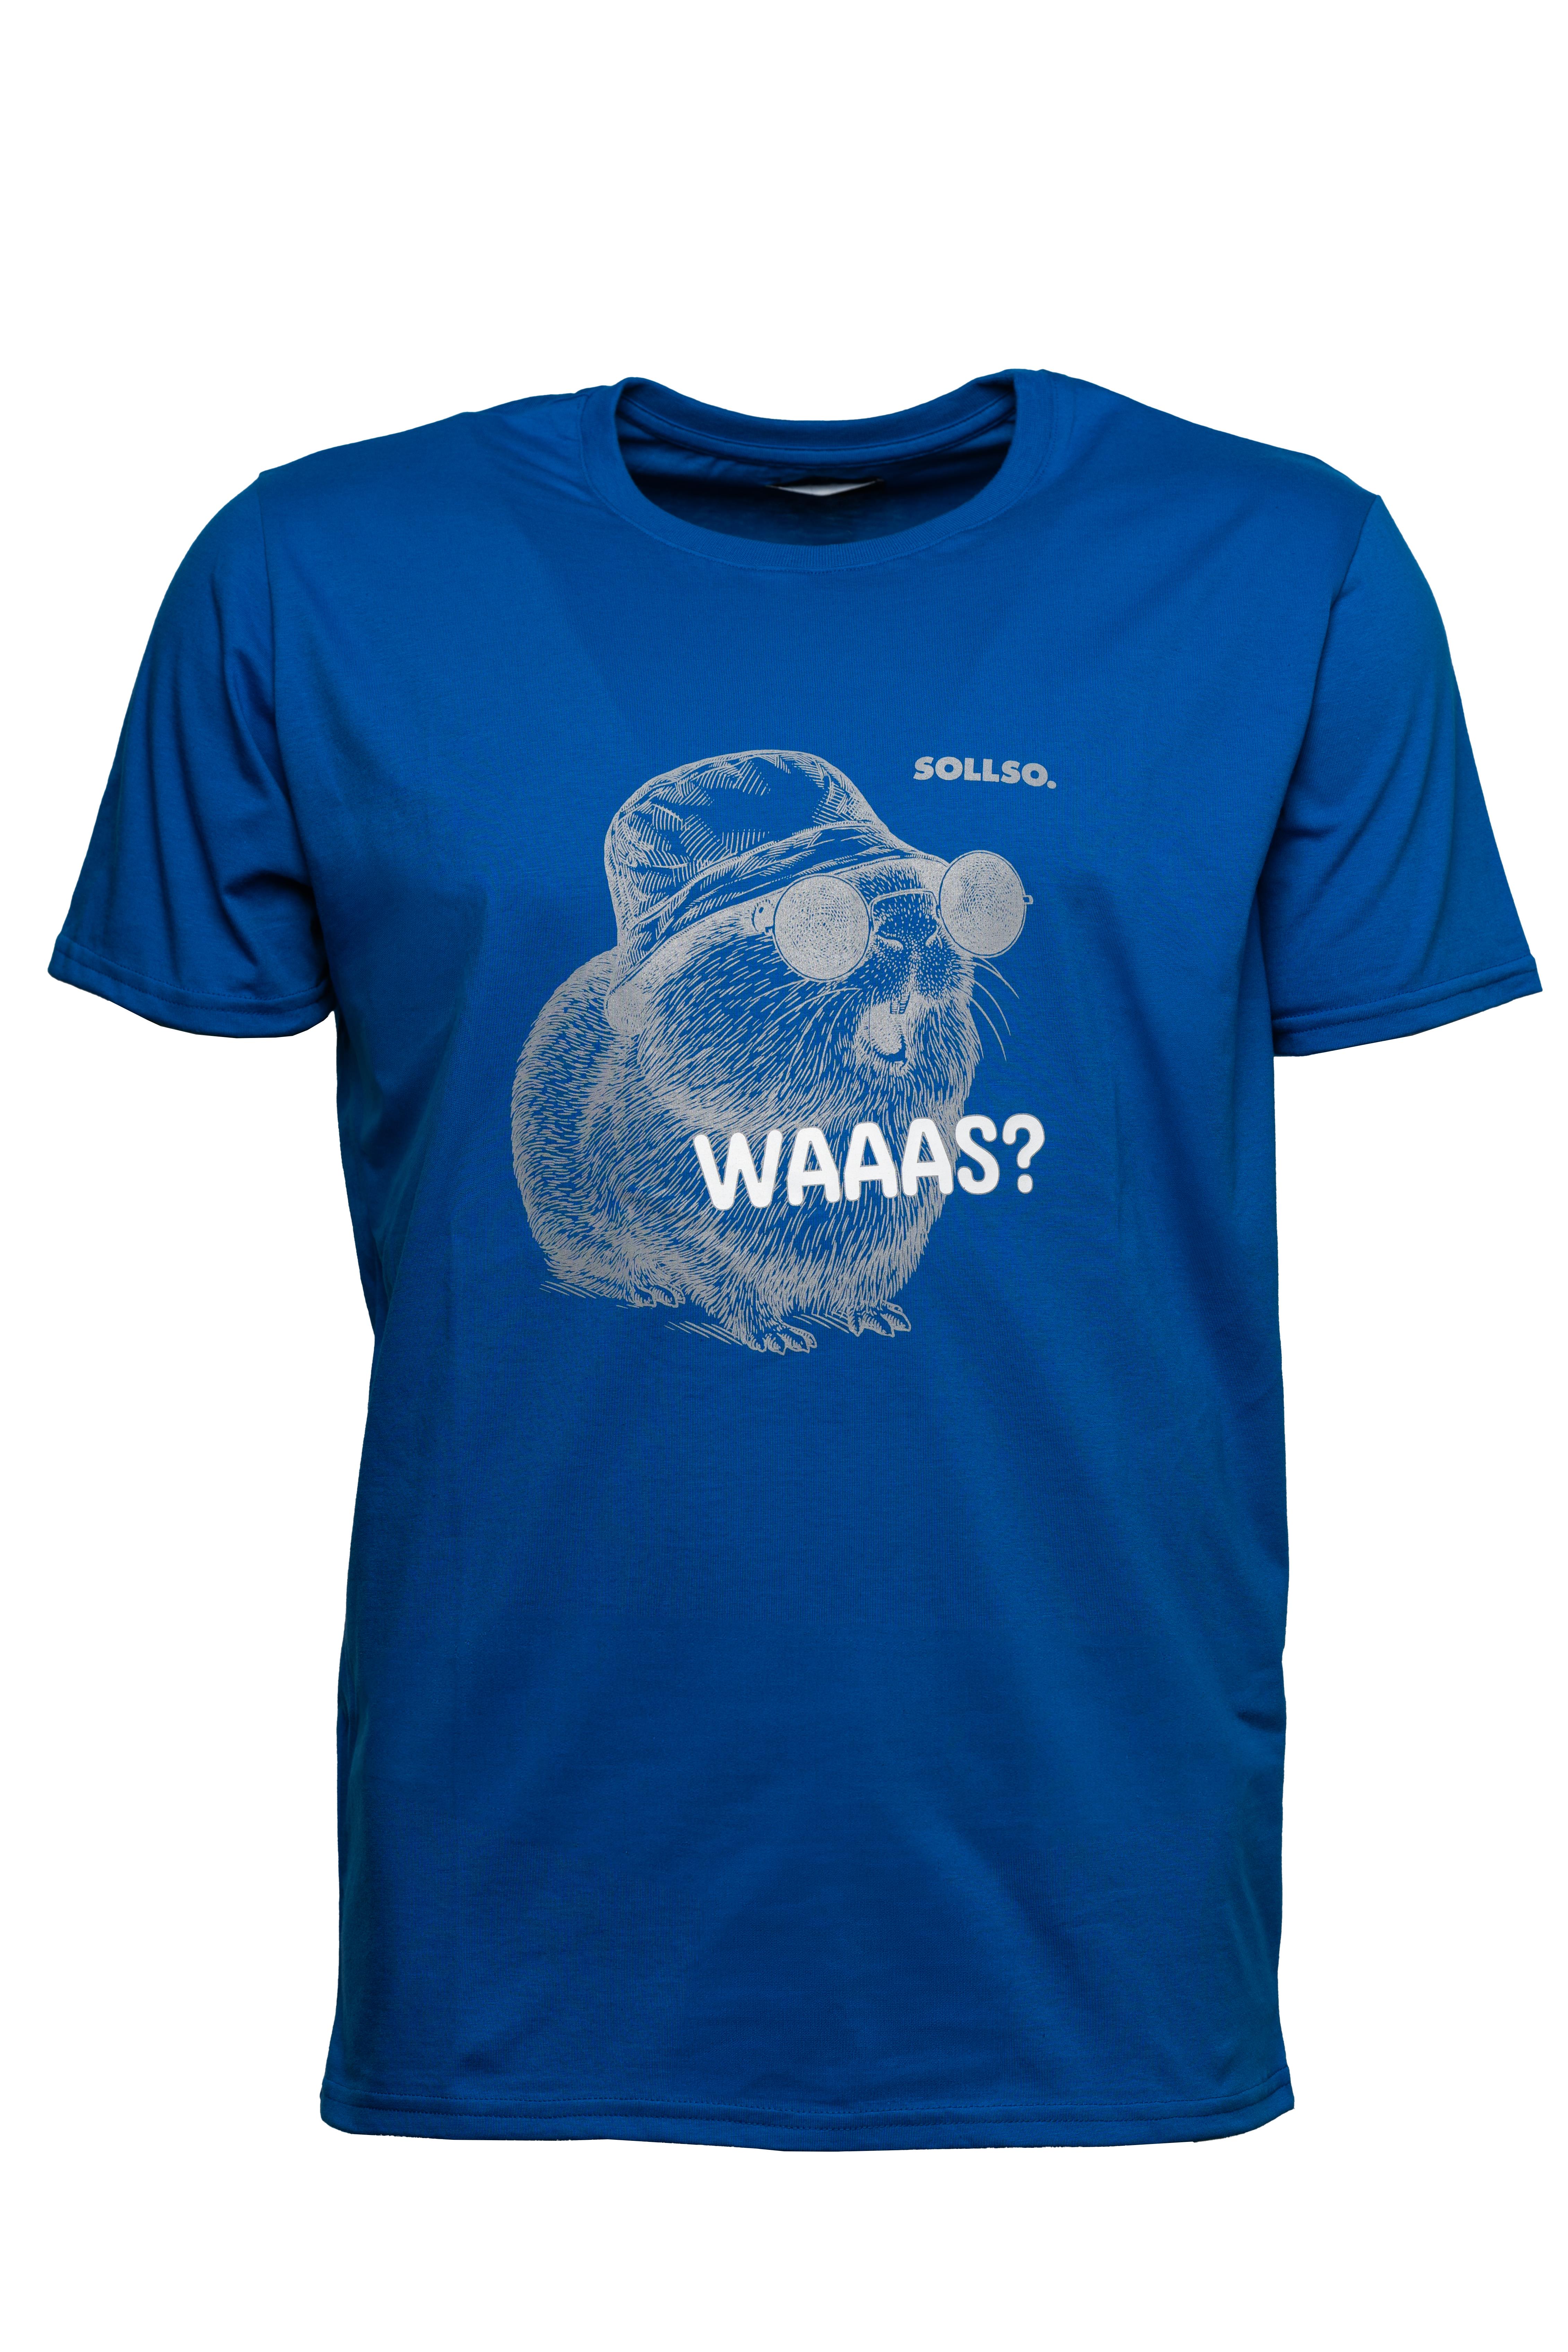 SOLLSO. T-Shirt "Guinea Pig" Farbe Ocean Blue, Größe 10XL